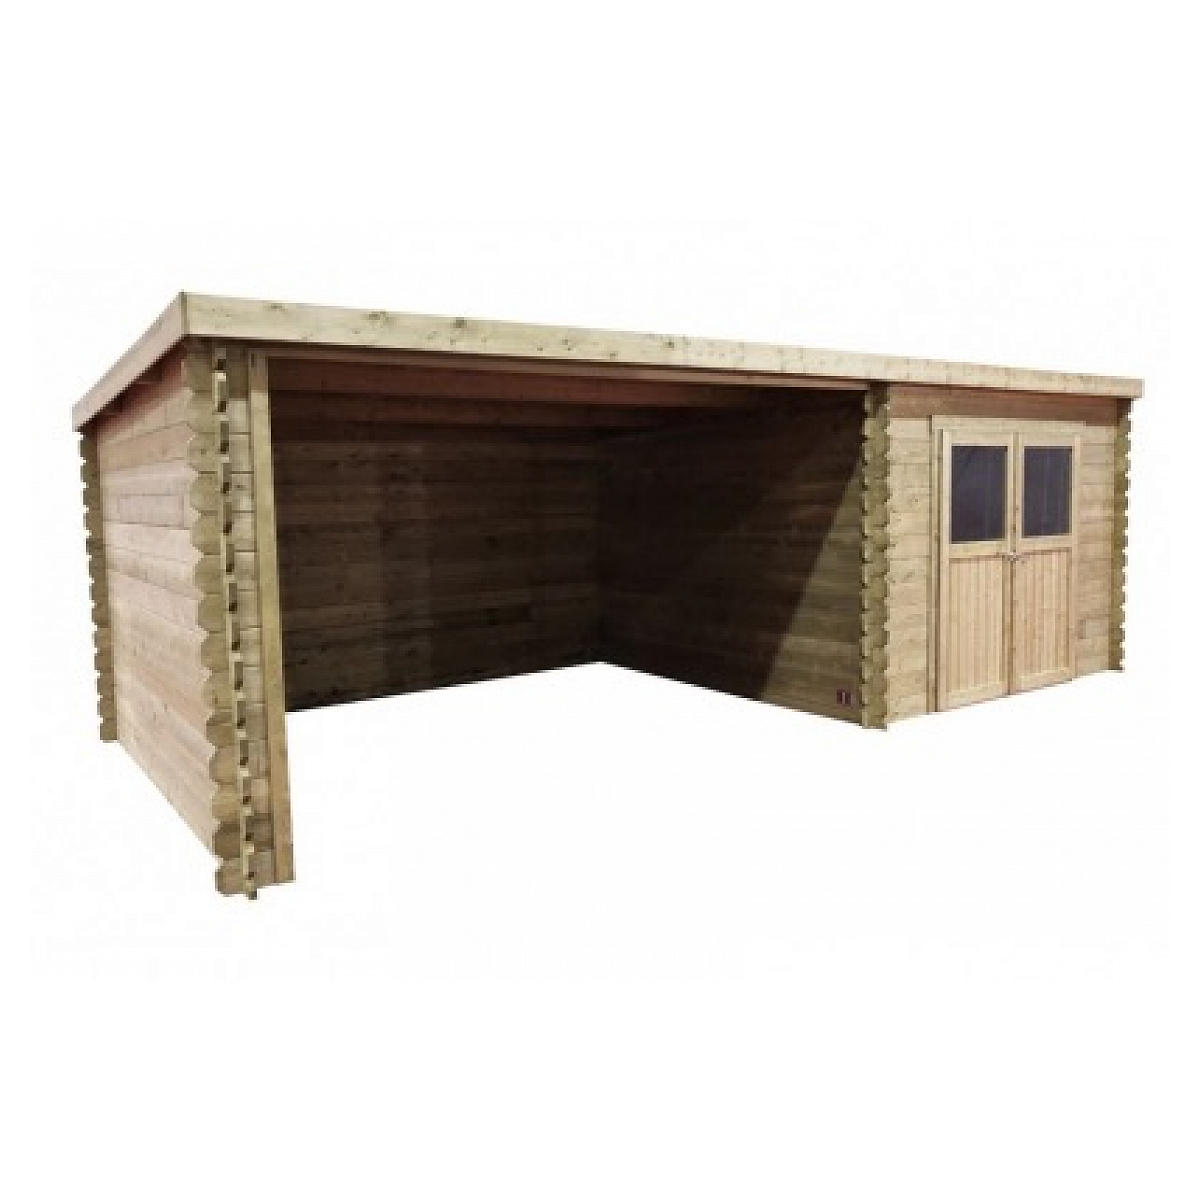 Abri de jardin rohan 19,82m² en bois traite autoclave 28mm avec terrasse couverte